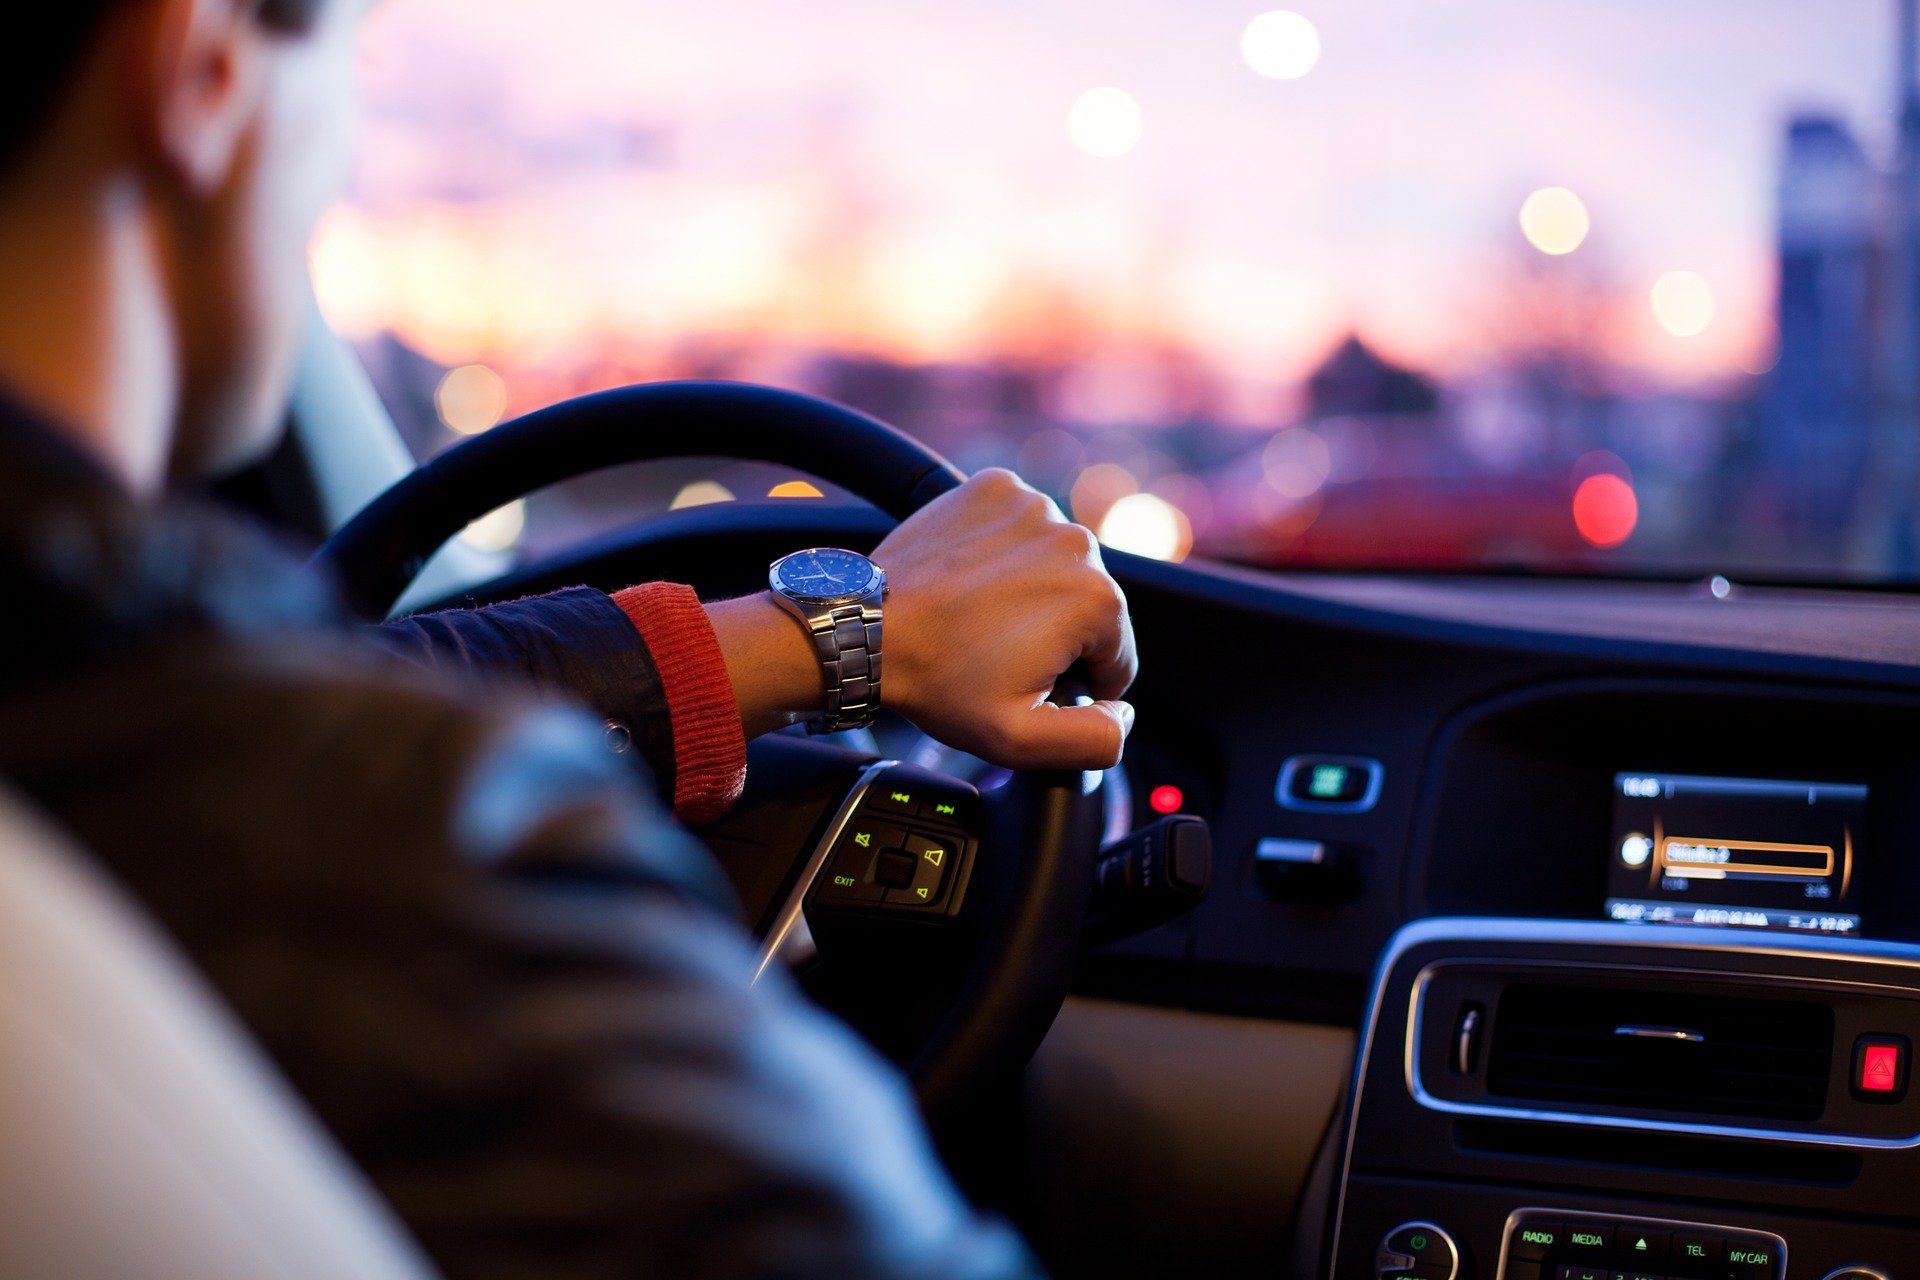 Studiu: Şoferii din București pierd în jur de 10-20 de minute în căutarea unui loc de parcare